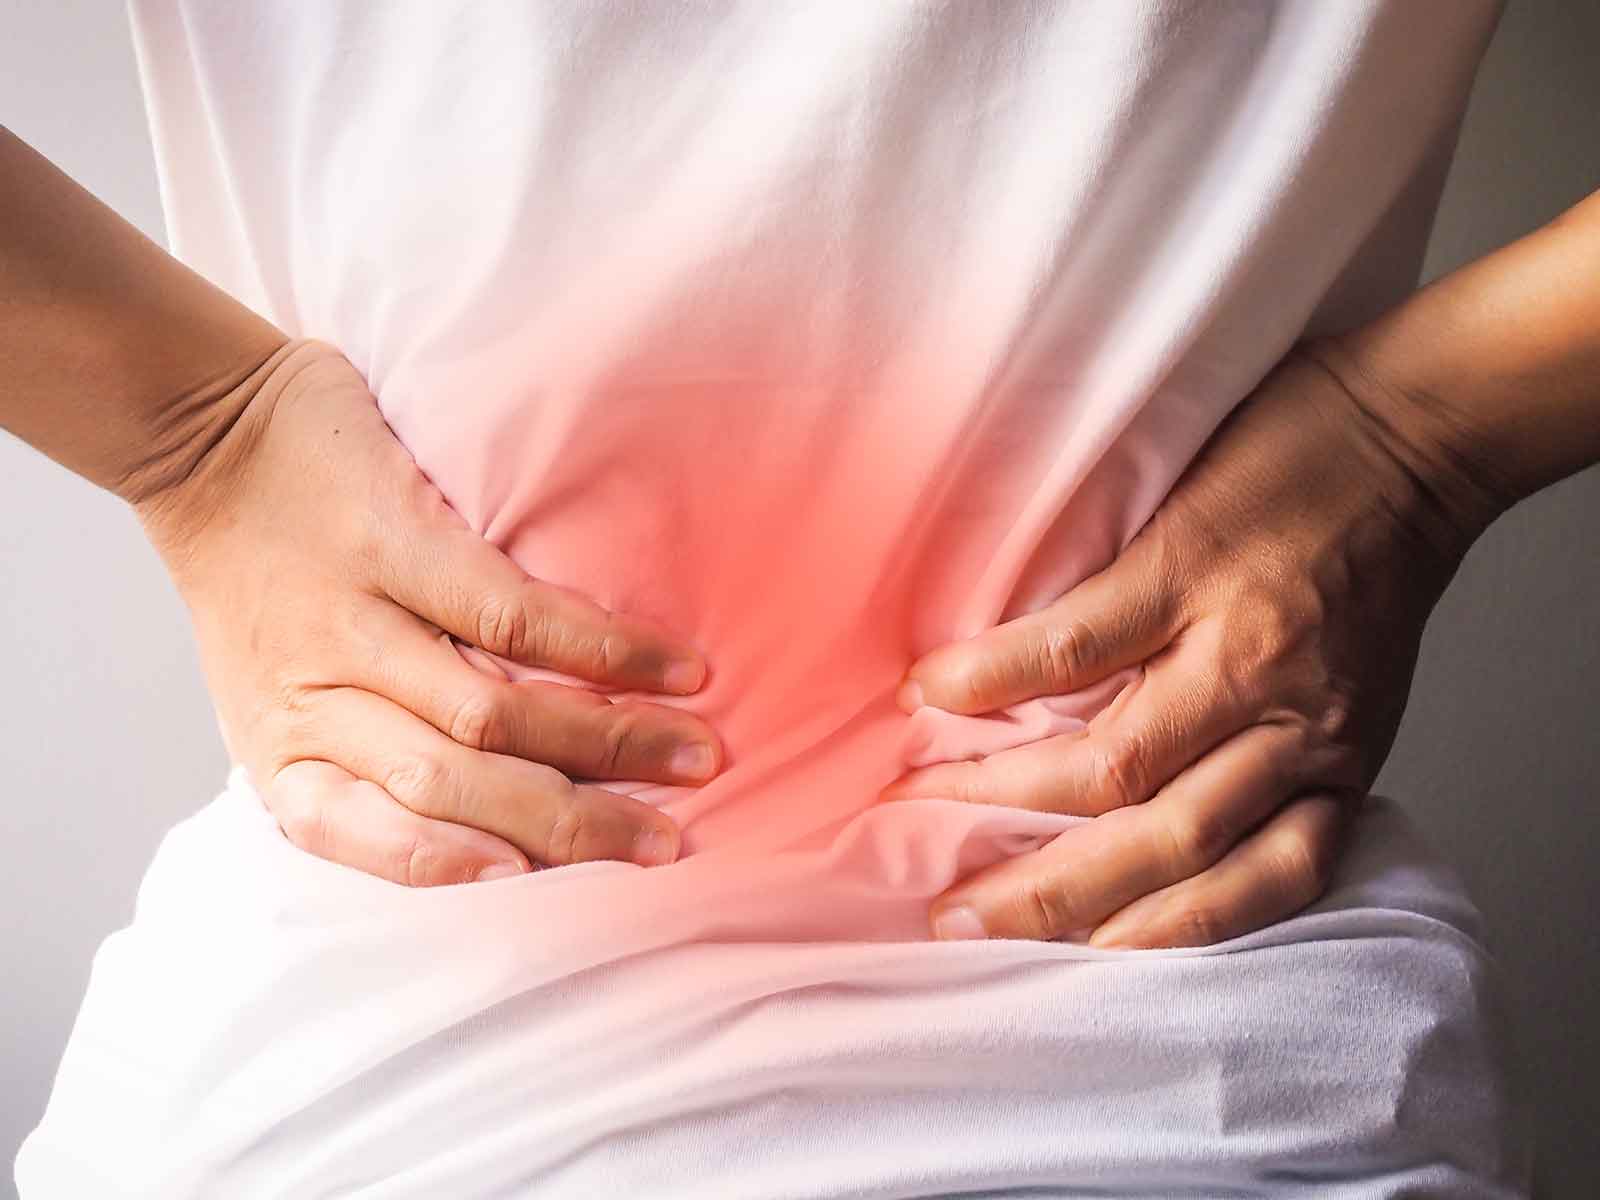 Beinlängendifferenz ausgleichen und Rückenschmerzen vorbeugen